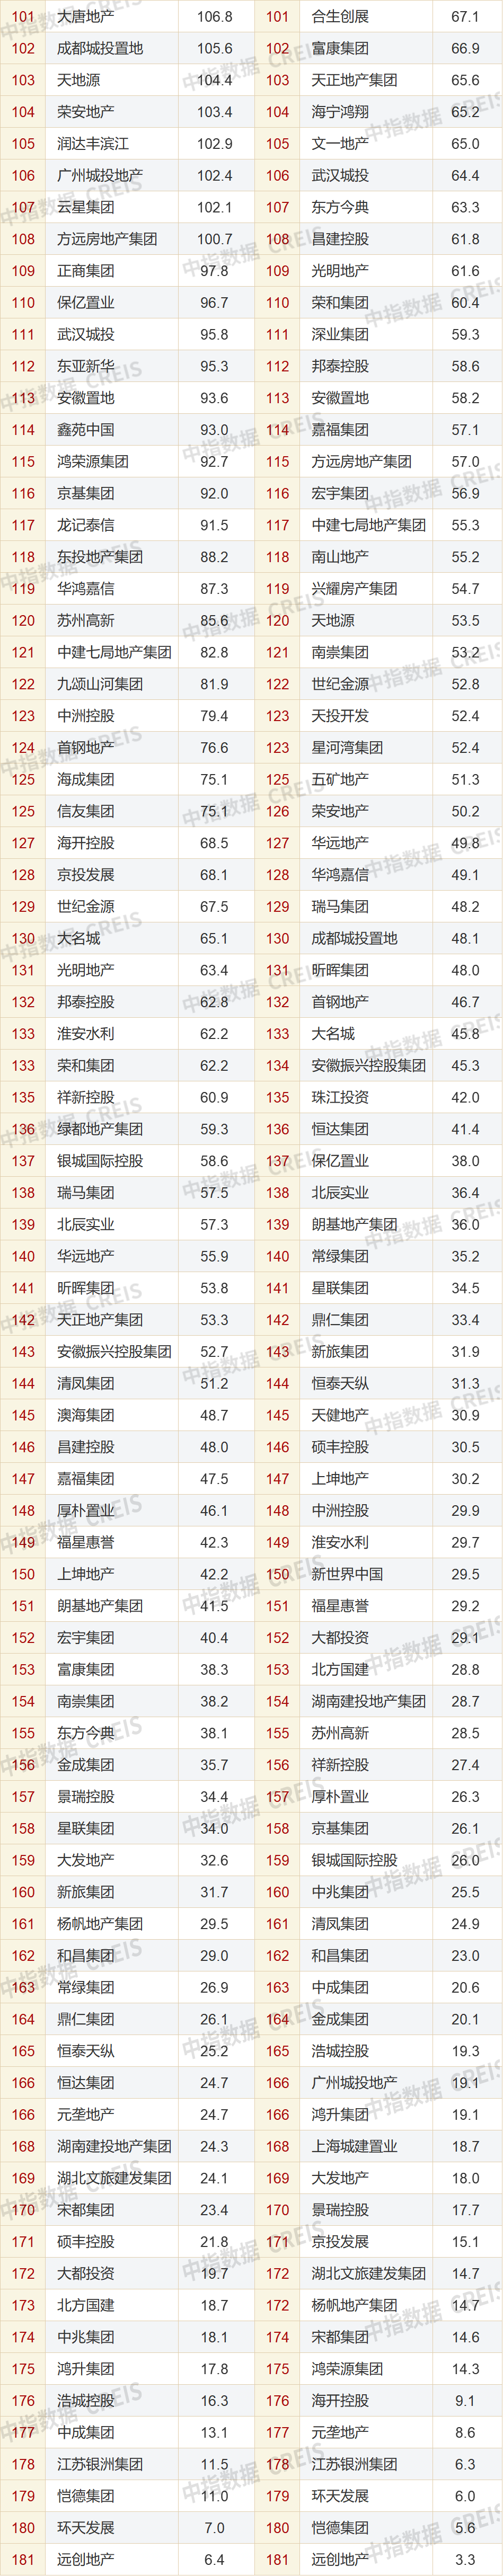 1-11月中国房地产企业销售业绩排行榜发布：百强房企销售总额超5.7万亿